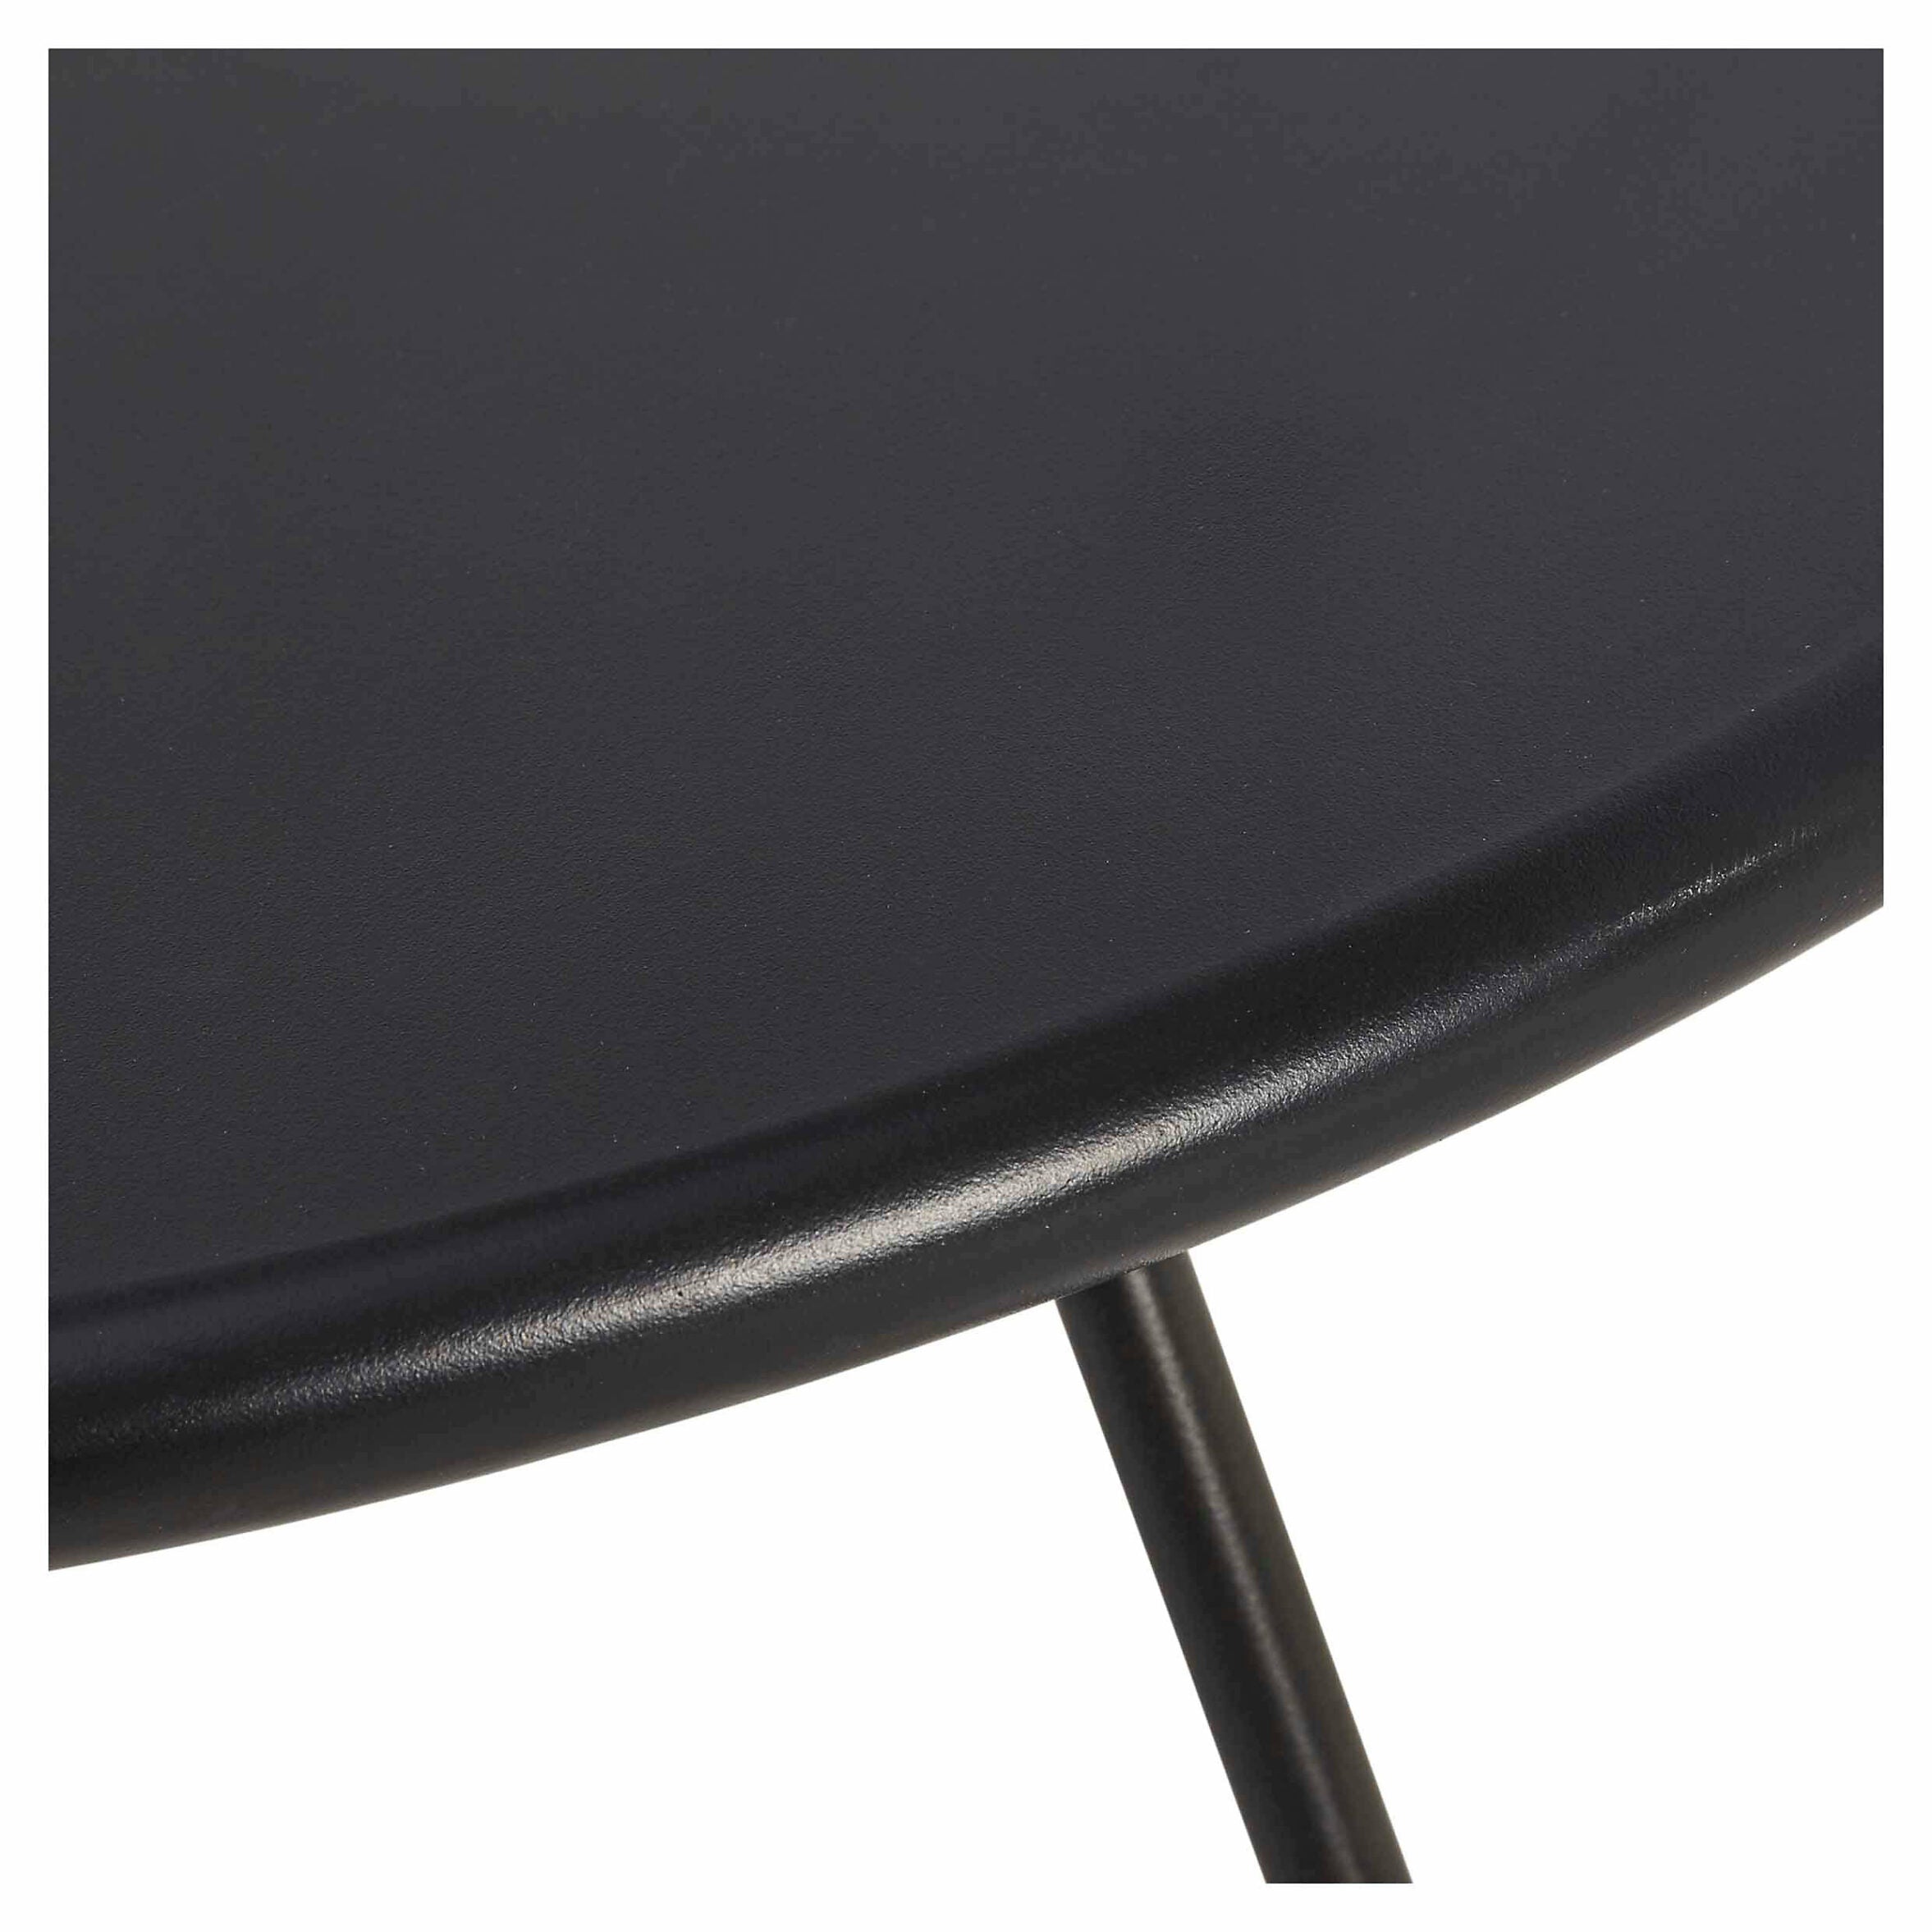 Garden Table GoodHome Nova Metal, Black, Water resistant 700mm - 6657